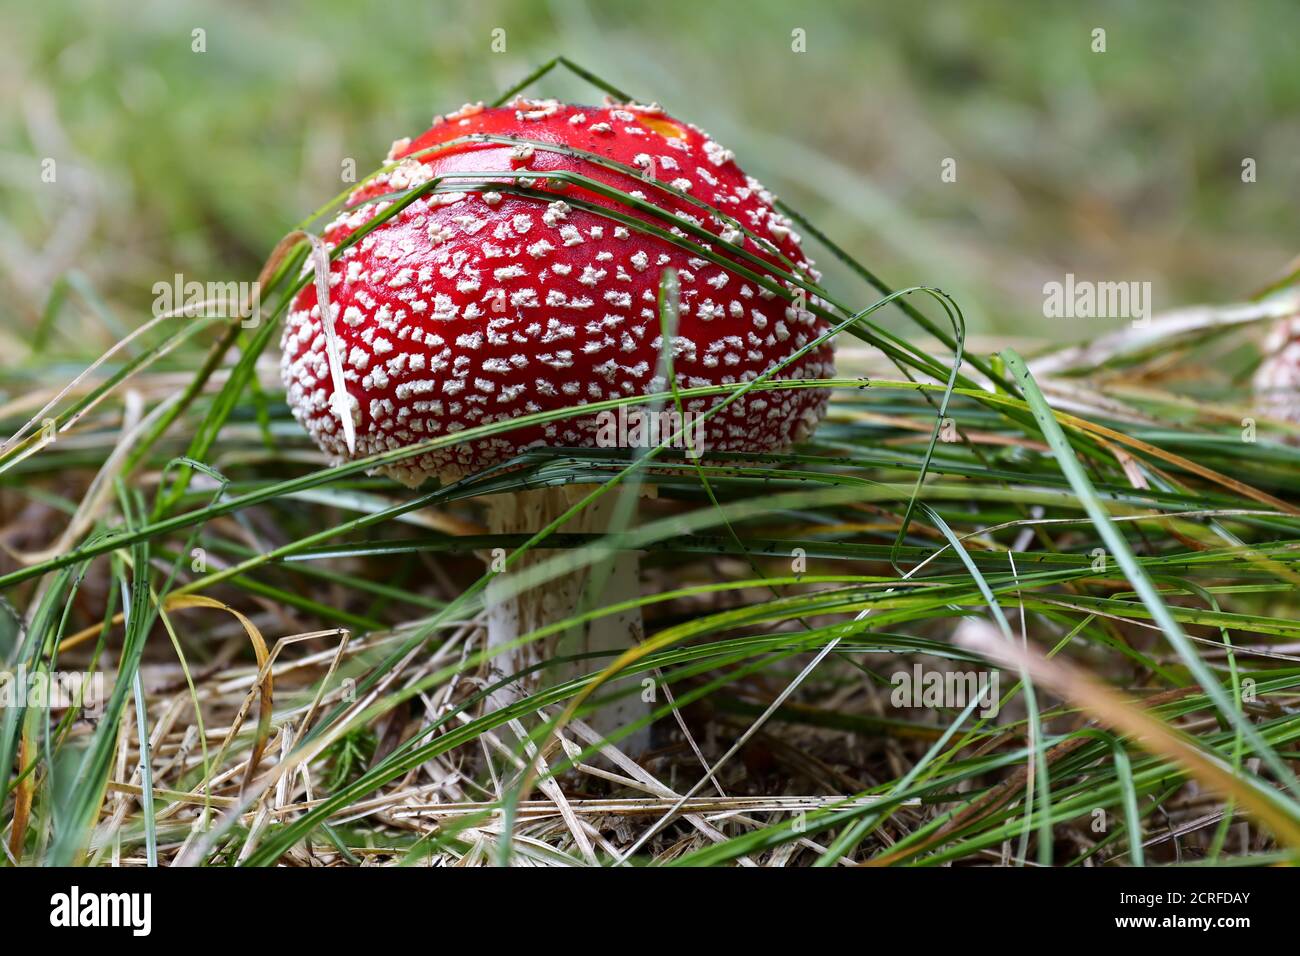 Tabouret rouge poussant dans l'herbe - Amanita muscaria, champignon toxique Banque D'Images